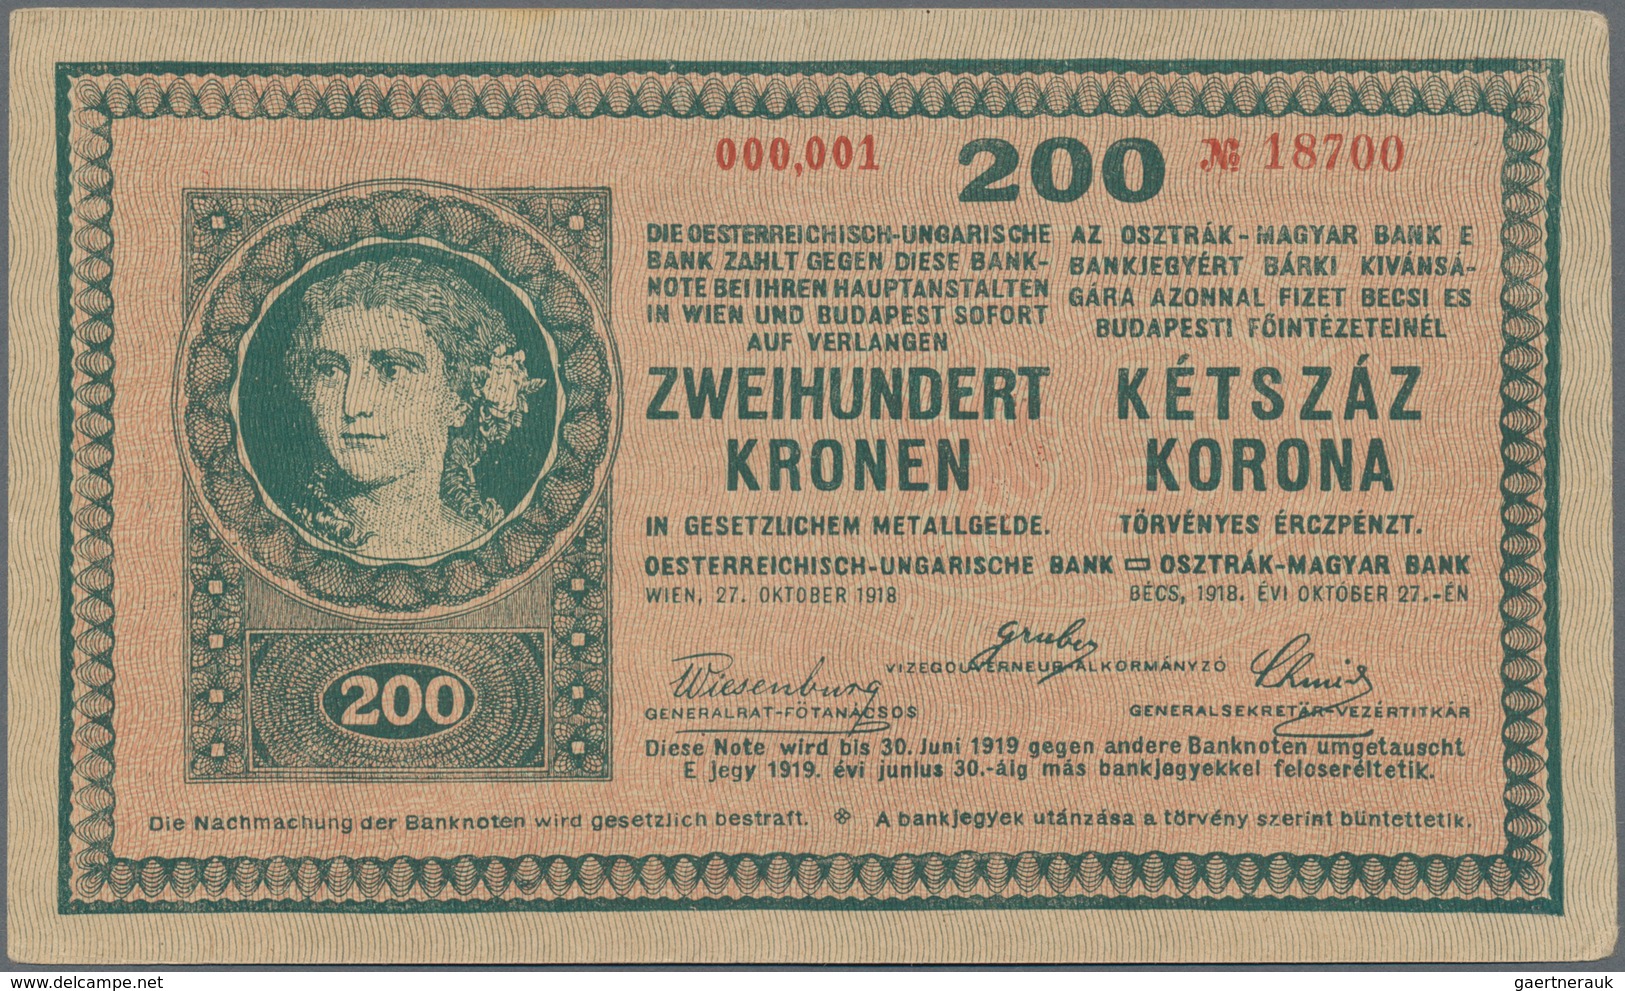 Hungary / Ungarn: Osztrák-Magyar Bank / Oesterreichisch-Ungarische Bank, set with 13 banknotes compr